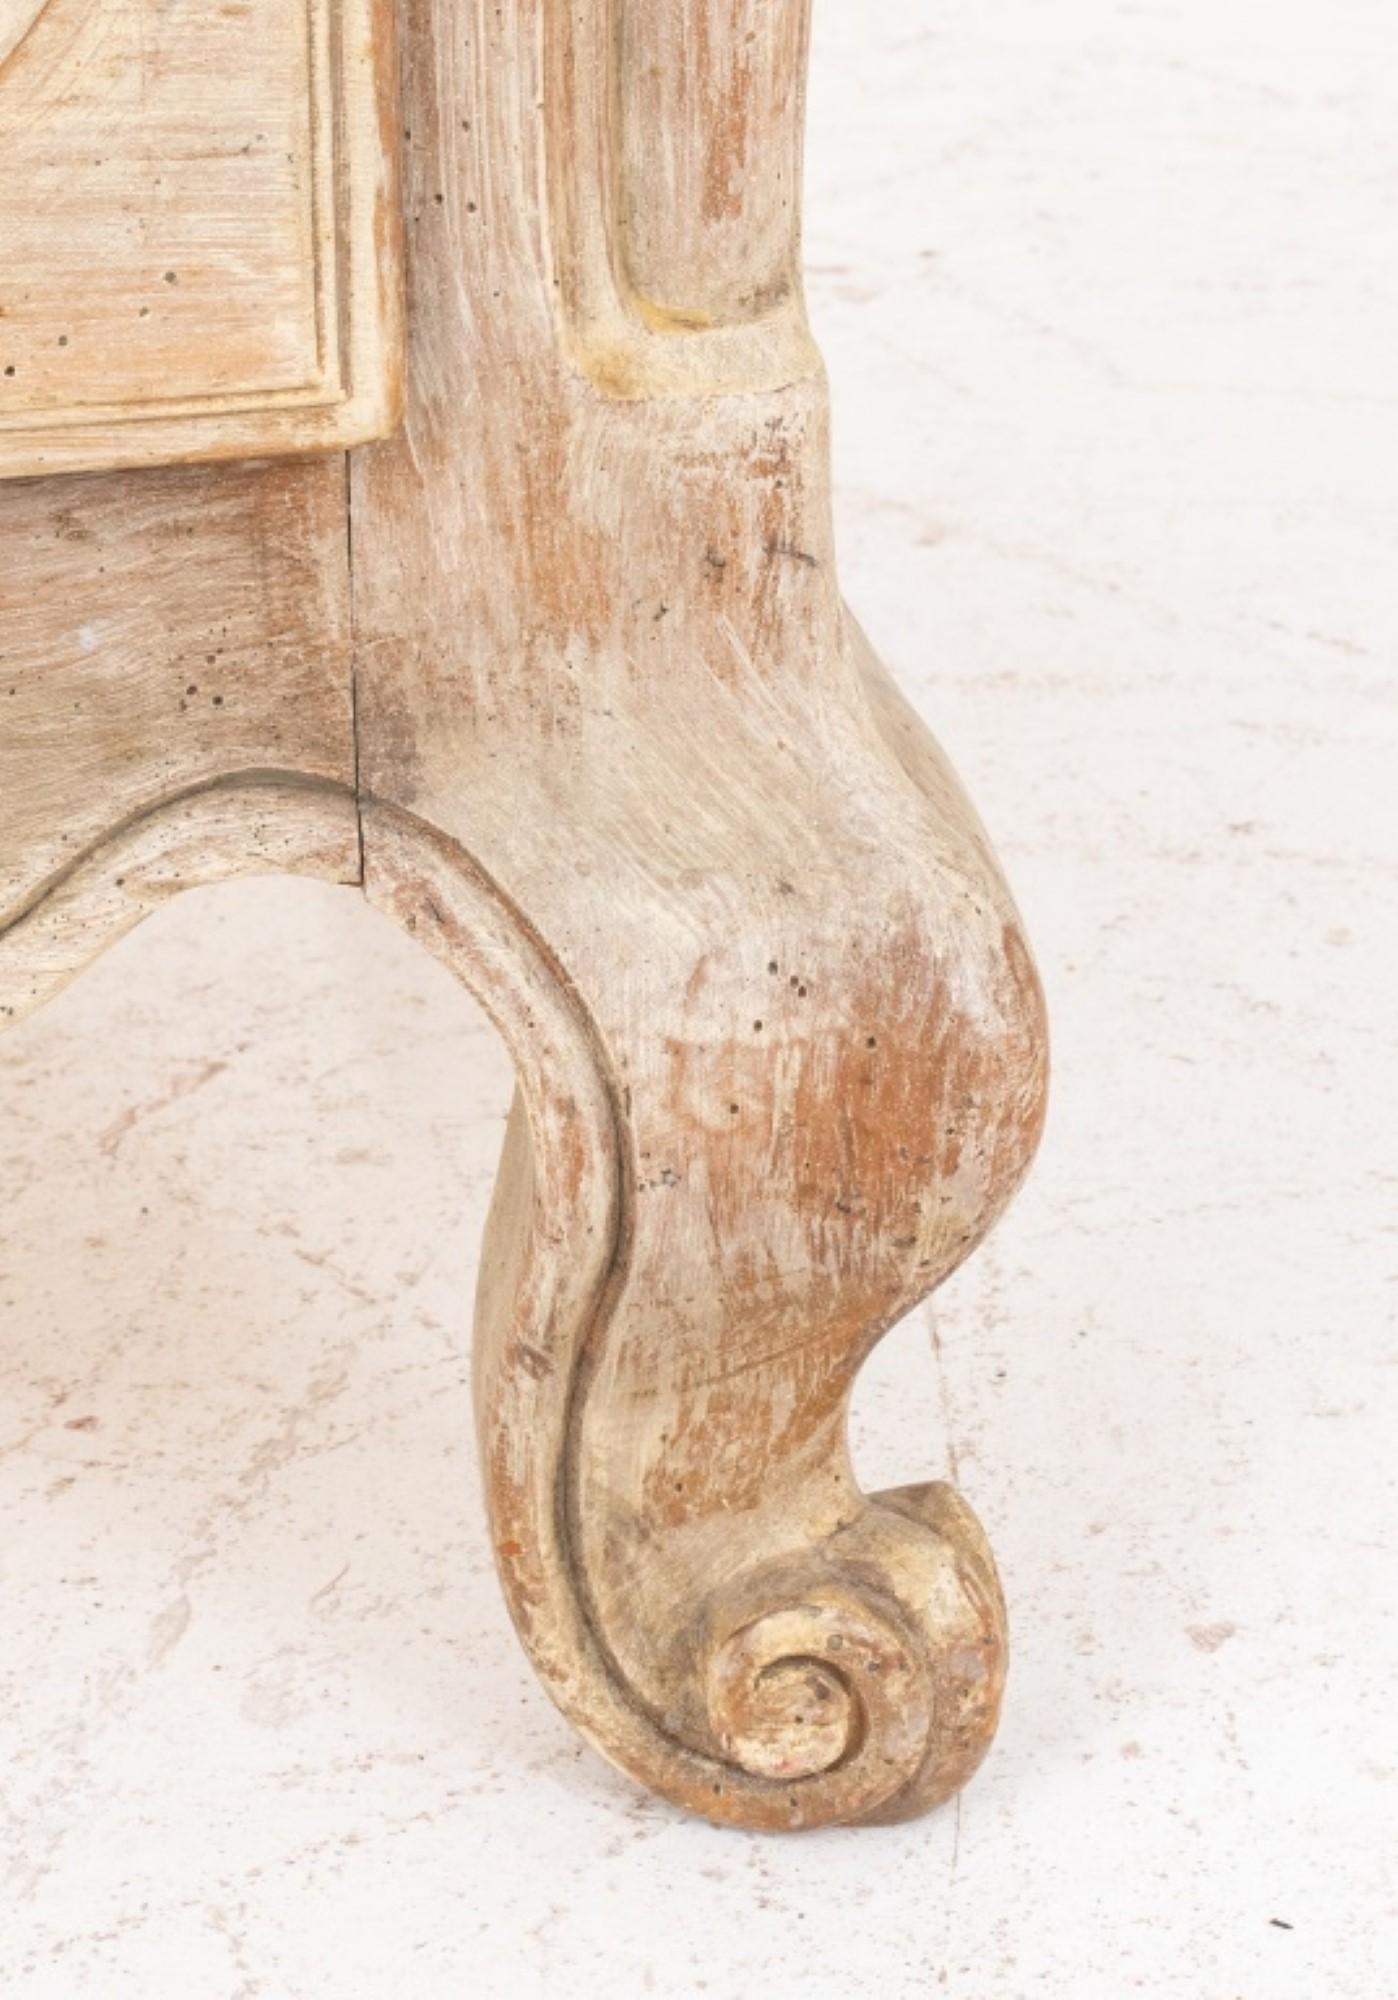 Coffre à bombes en bois dur de style provincial français

Style : Provincial français
Caractéristiques : Deux tiroirs avec des accents floraux sculptés, des poignées en métal en forme de feuillage, et reposant sur quatre pieds à